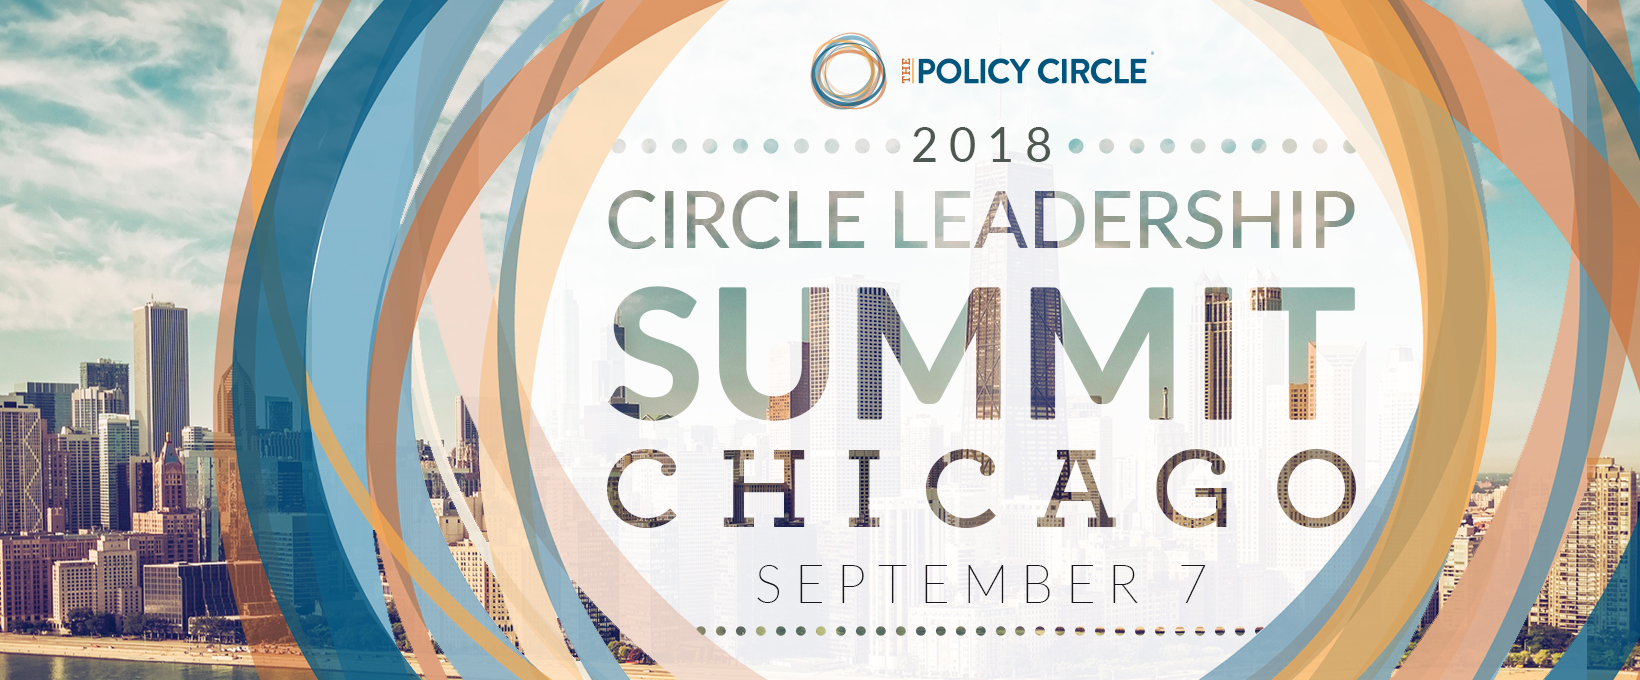 Policy Circle Leadership Summit